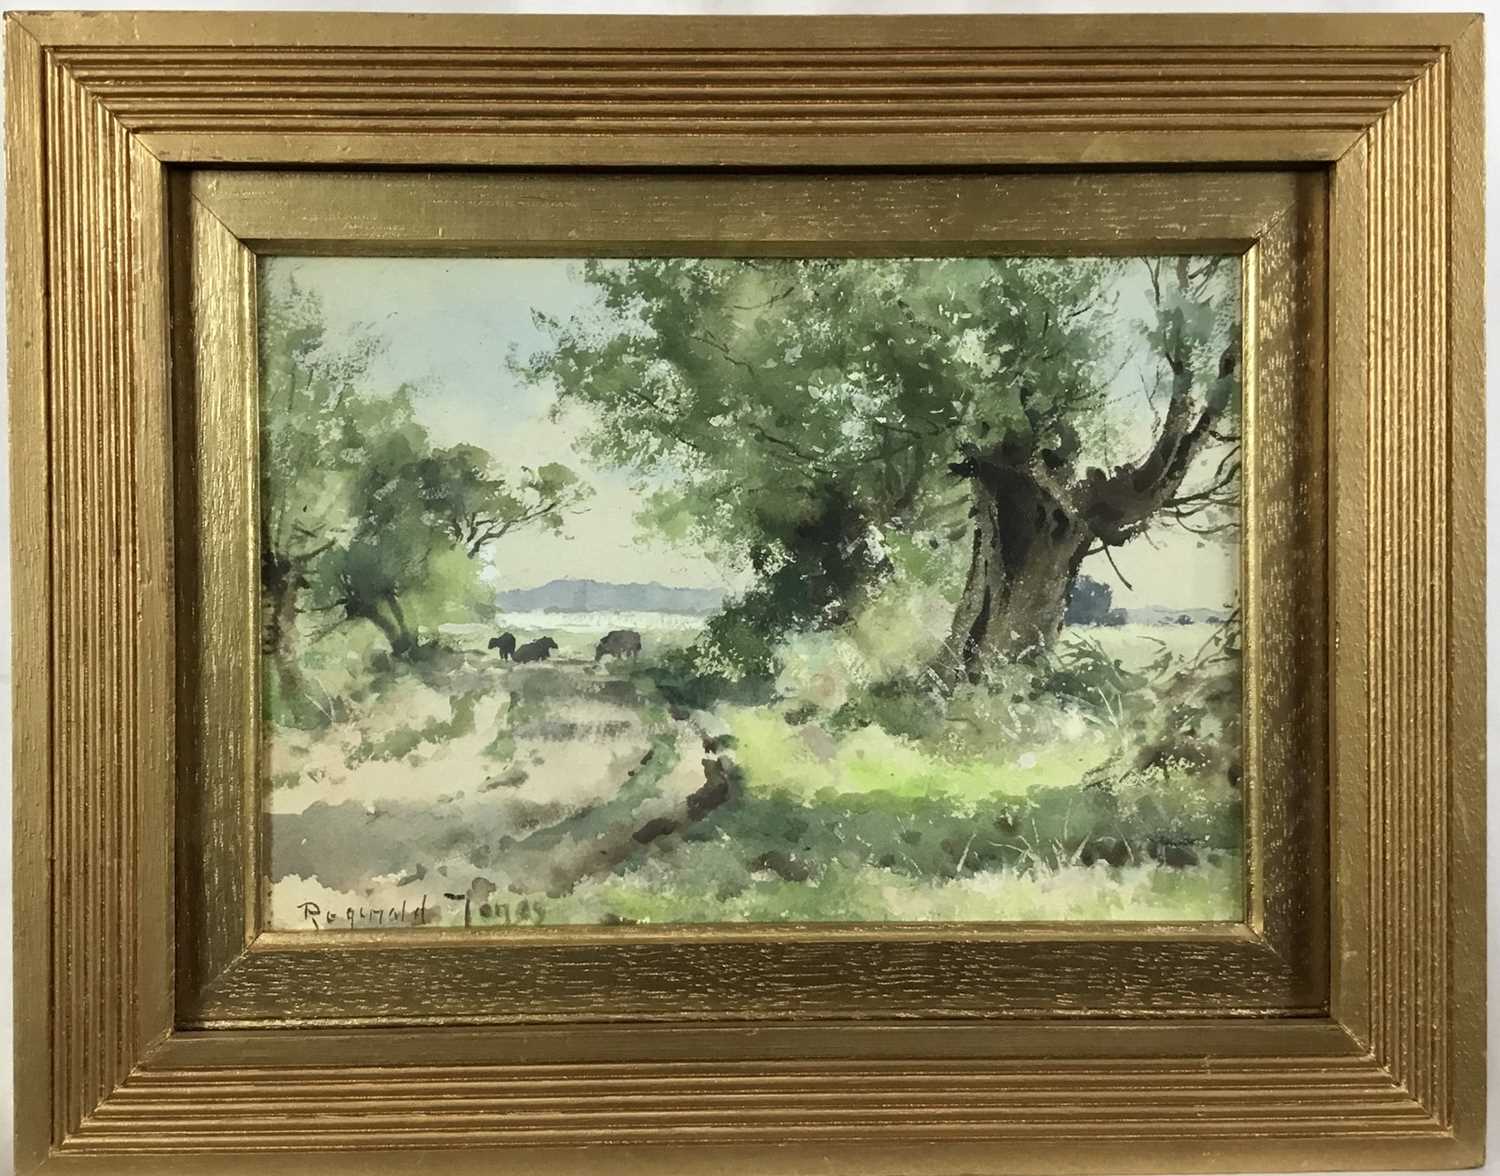 Lot 82 - Reginald Jones R.B.A (1857–1920) signed watercolour - landscape with cattle, 24cm x 17cm